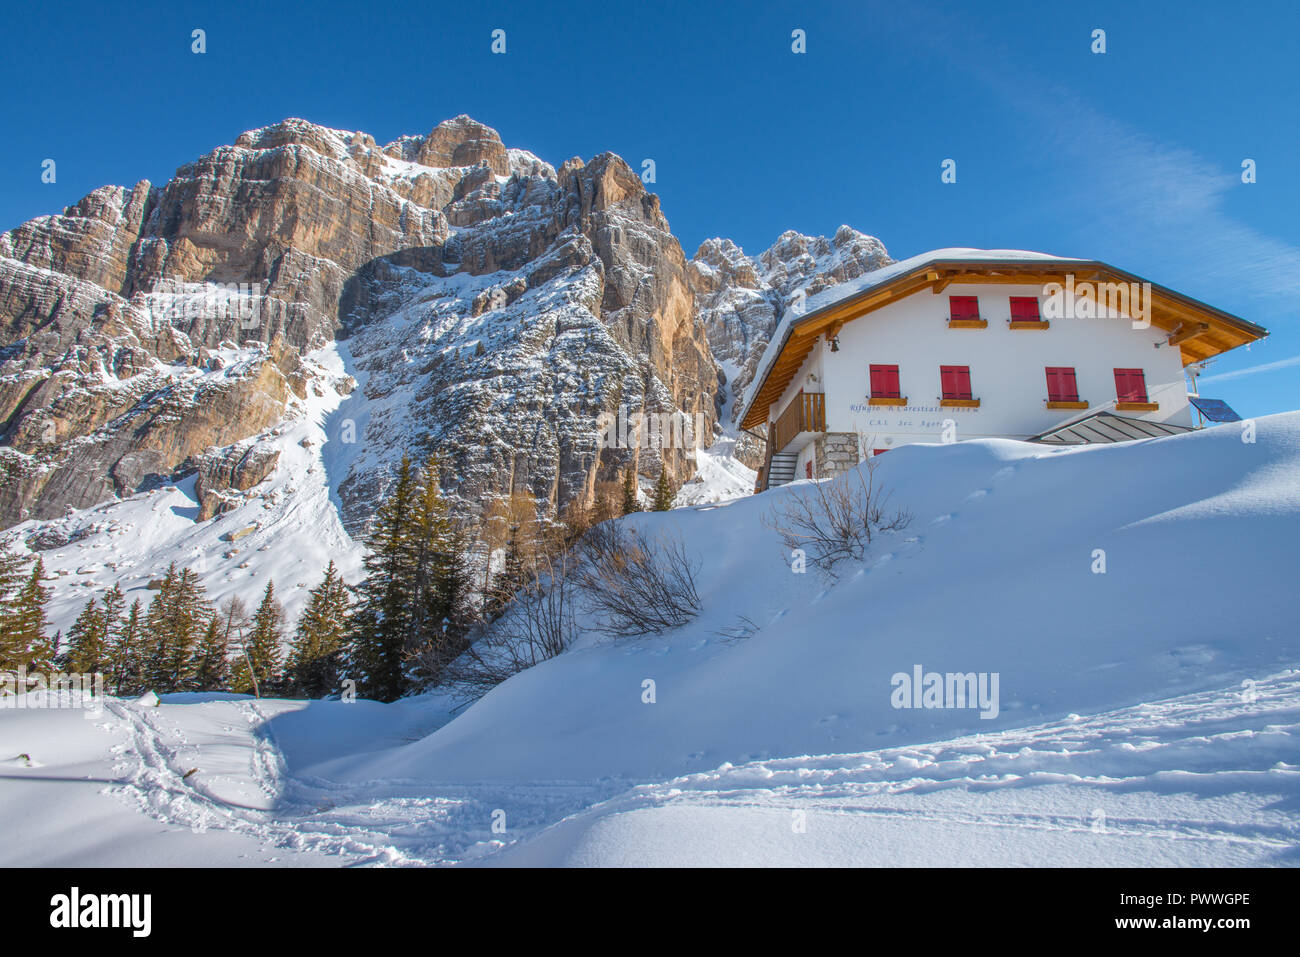 Bruto Carestiato Hütte, Berghütte in den italienischen Alpen. Wunderbar klaren Wintertag, Silvester auf dem Schnee. Imposante Berge, Pinienwald. Stockfoto